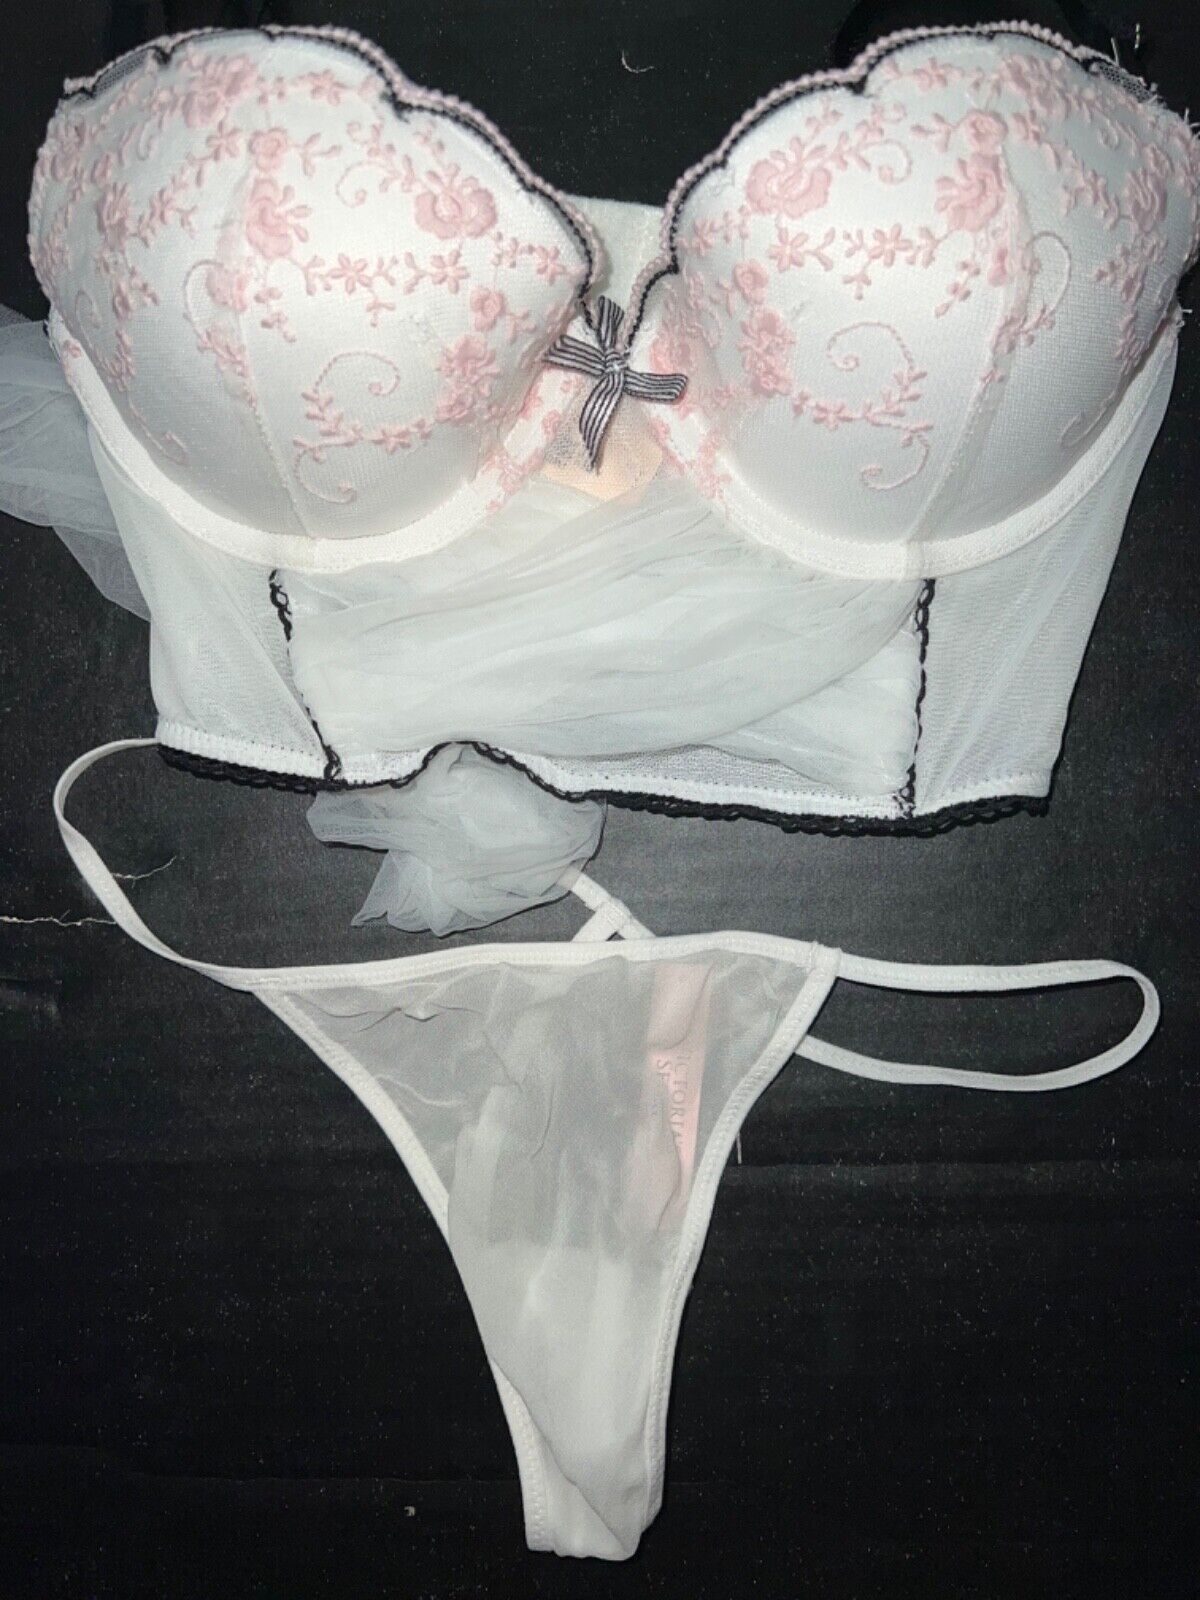 Victoria's Secret 32C/34B, 34C Soutien-Gorge and similar items